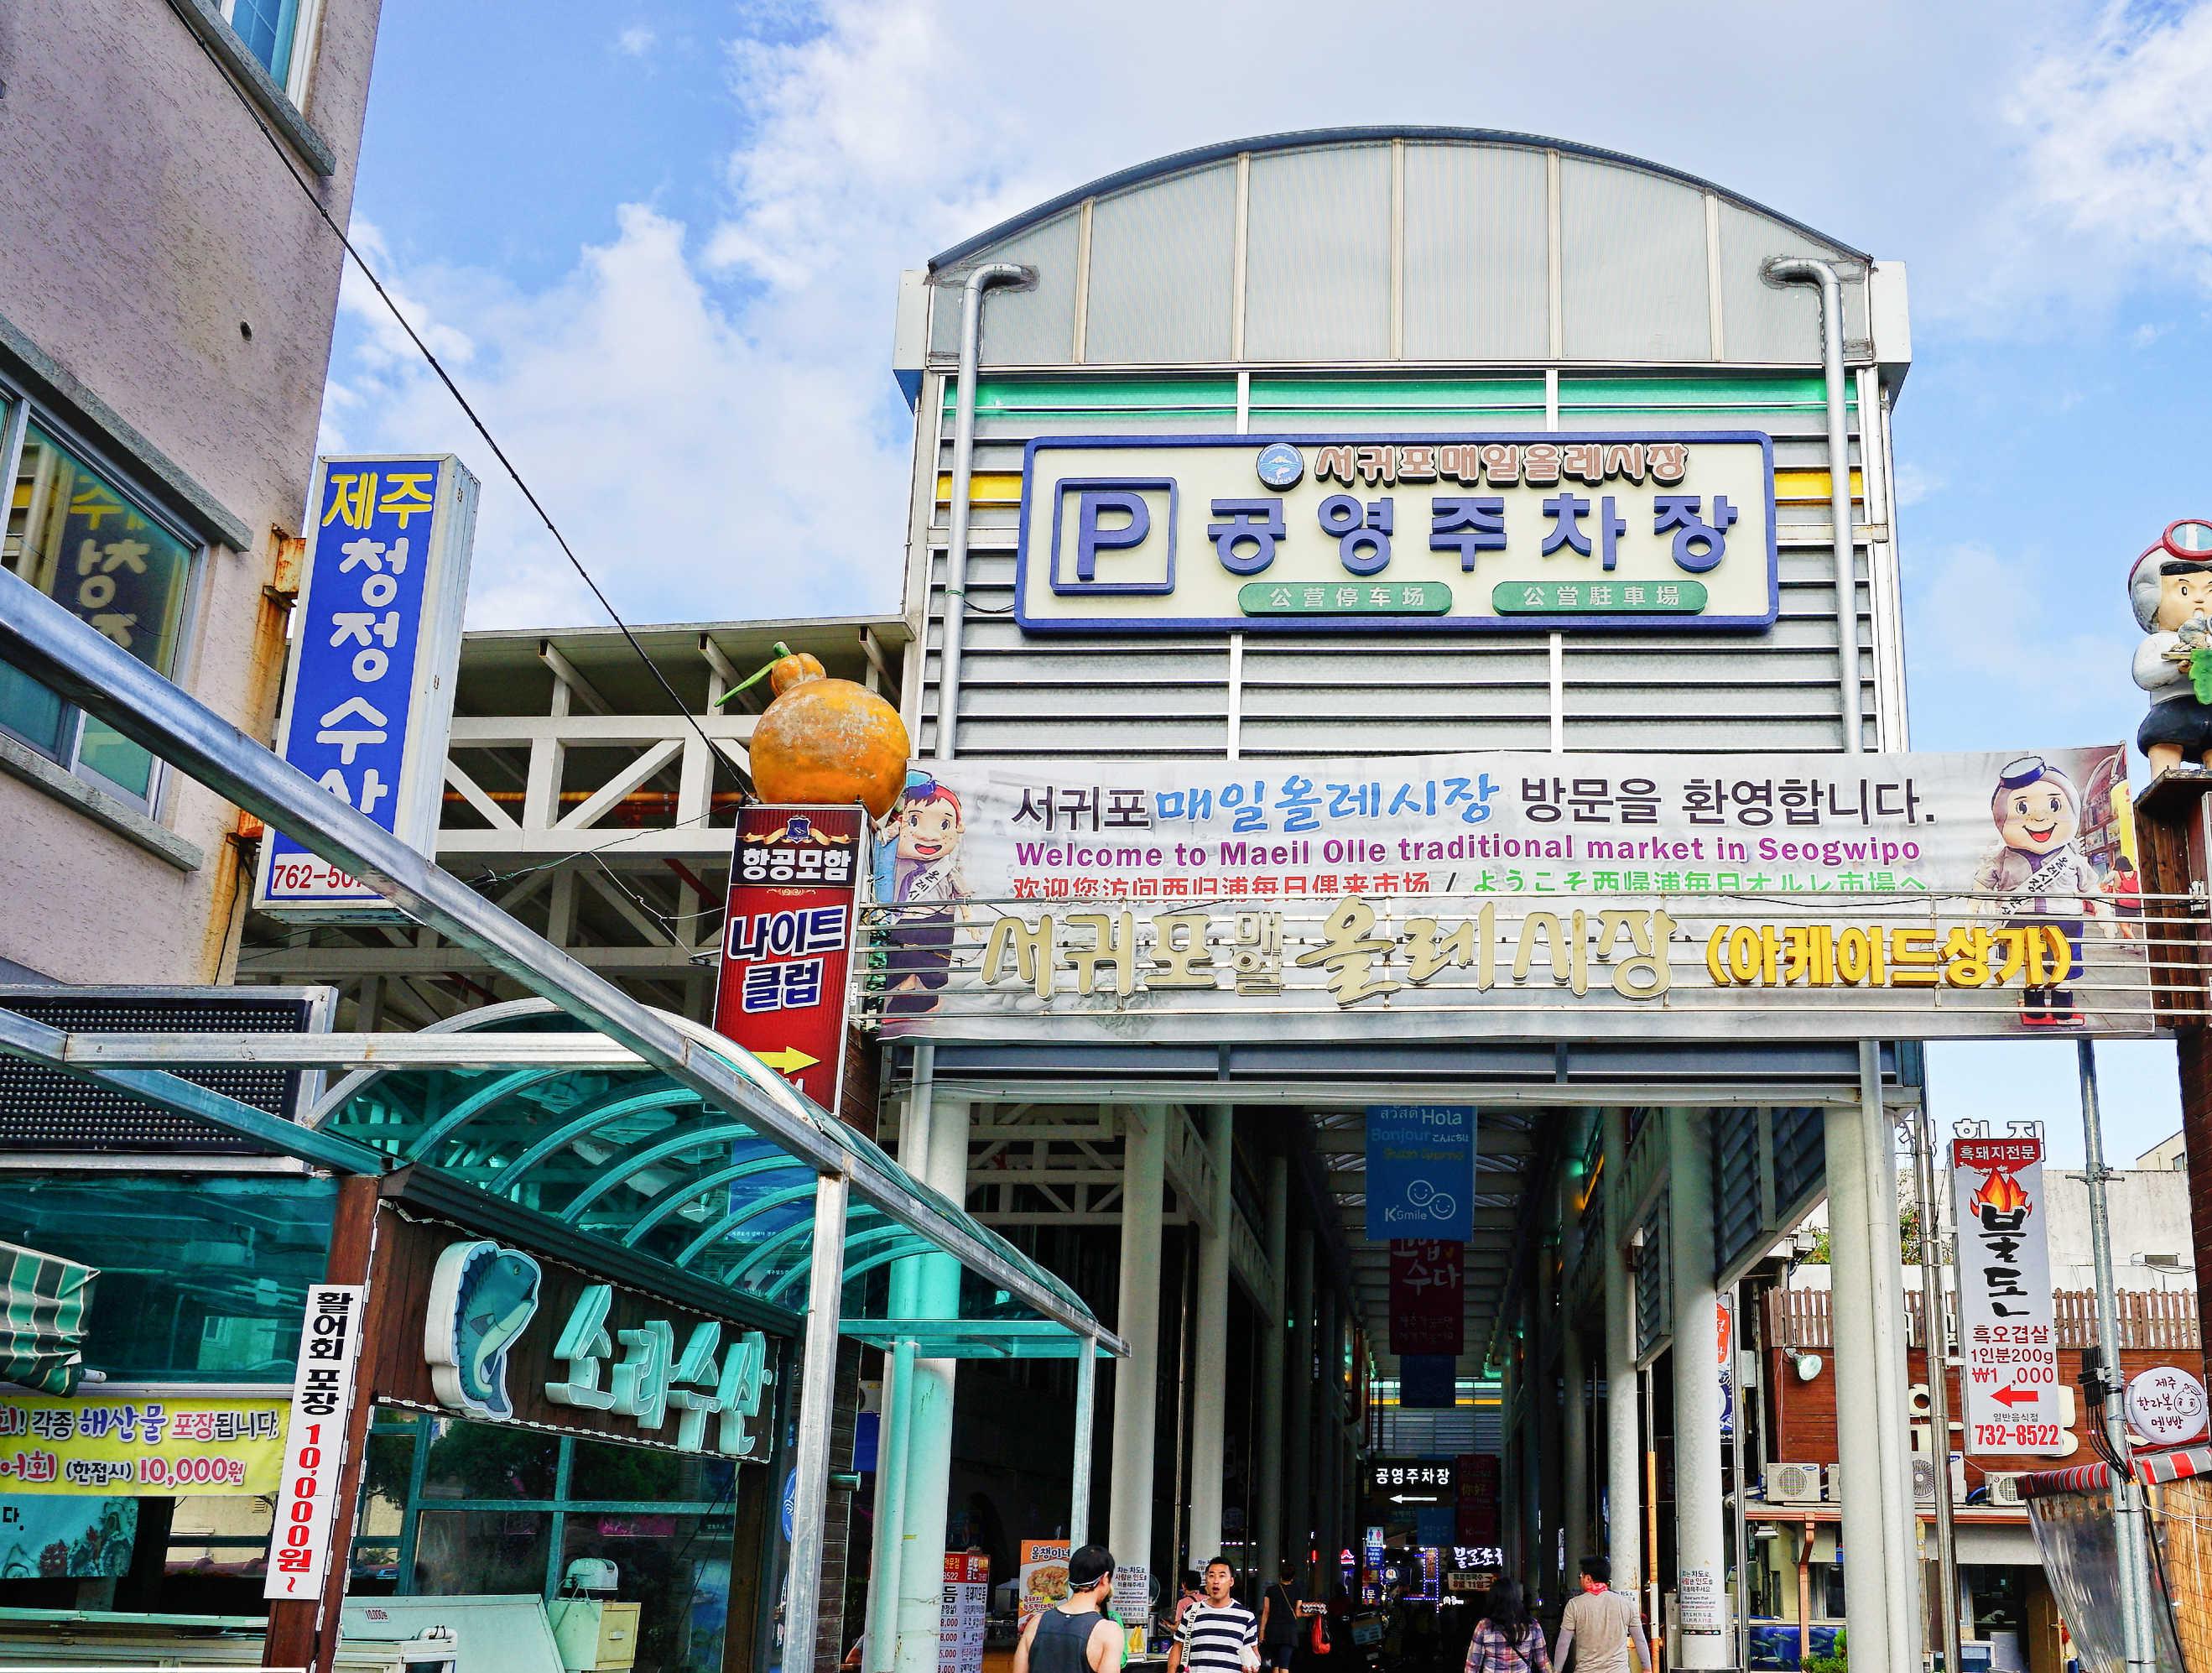 【携程美食林】济州市Samsunghyeol Haemultang餐馆,是济州岛很有名的海鲜锅专门店。满满一锅海鲜，味美料足，小鲍鱼、扇…